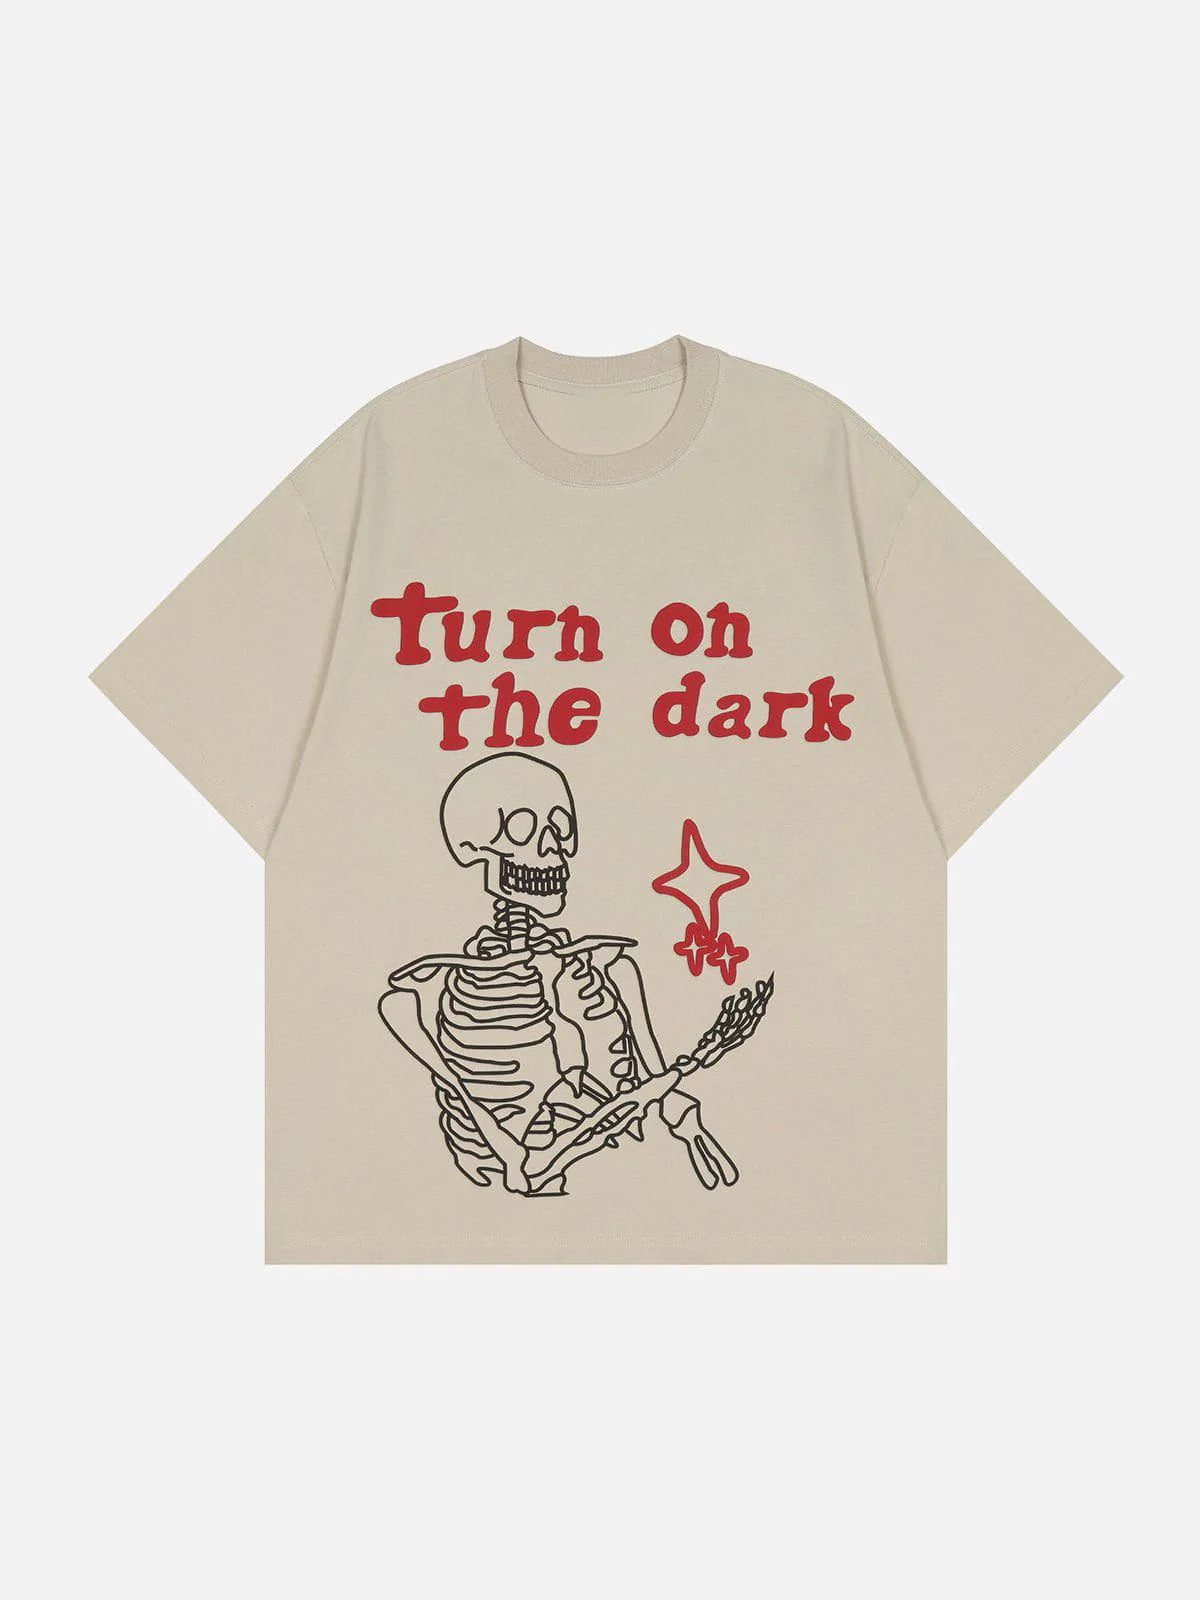 Faire Echo "Turn on the dark" Skull Print Tee